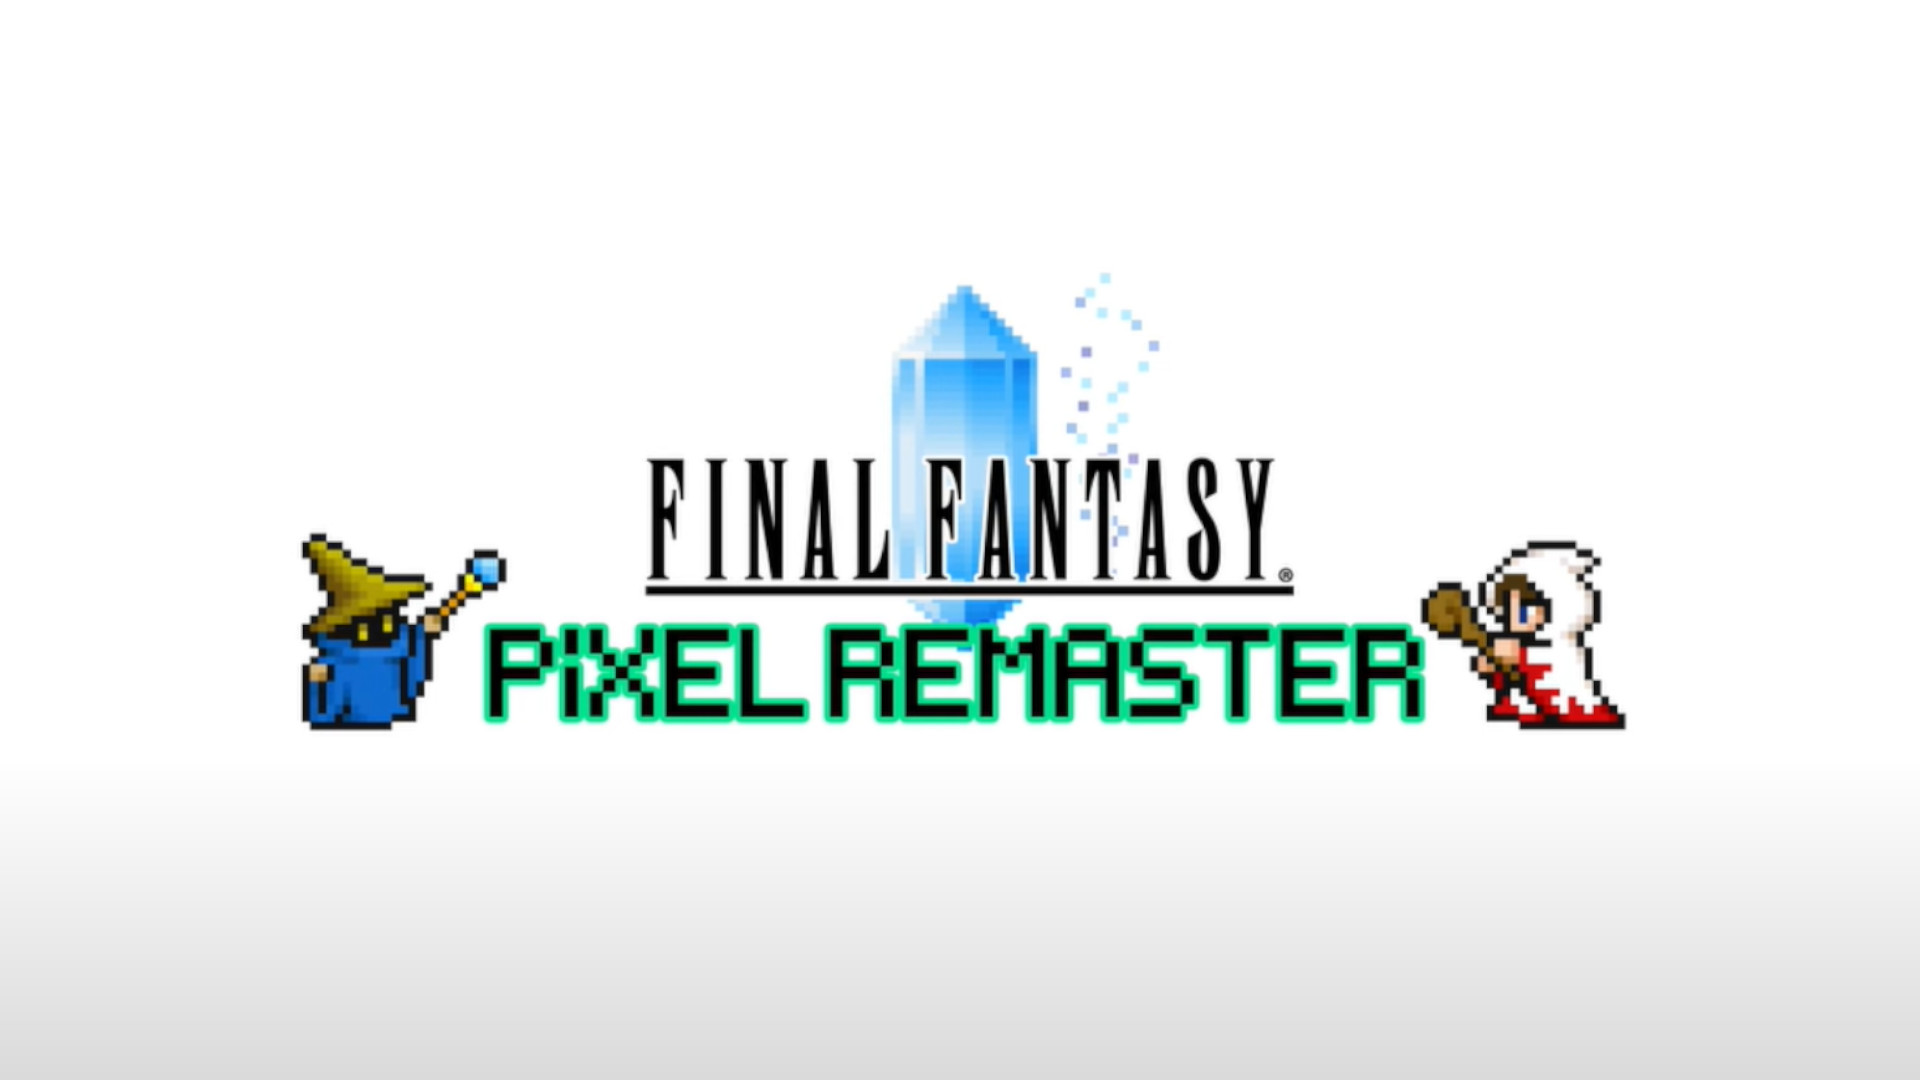 Final Fantasy Pixel Remaster bringer de seks første spillene til Steam, separat